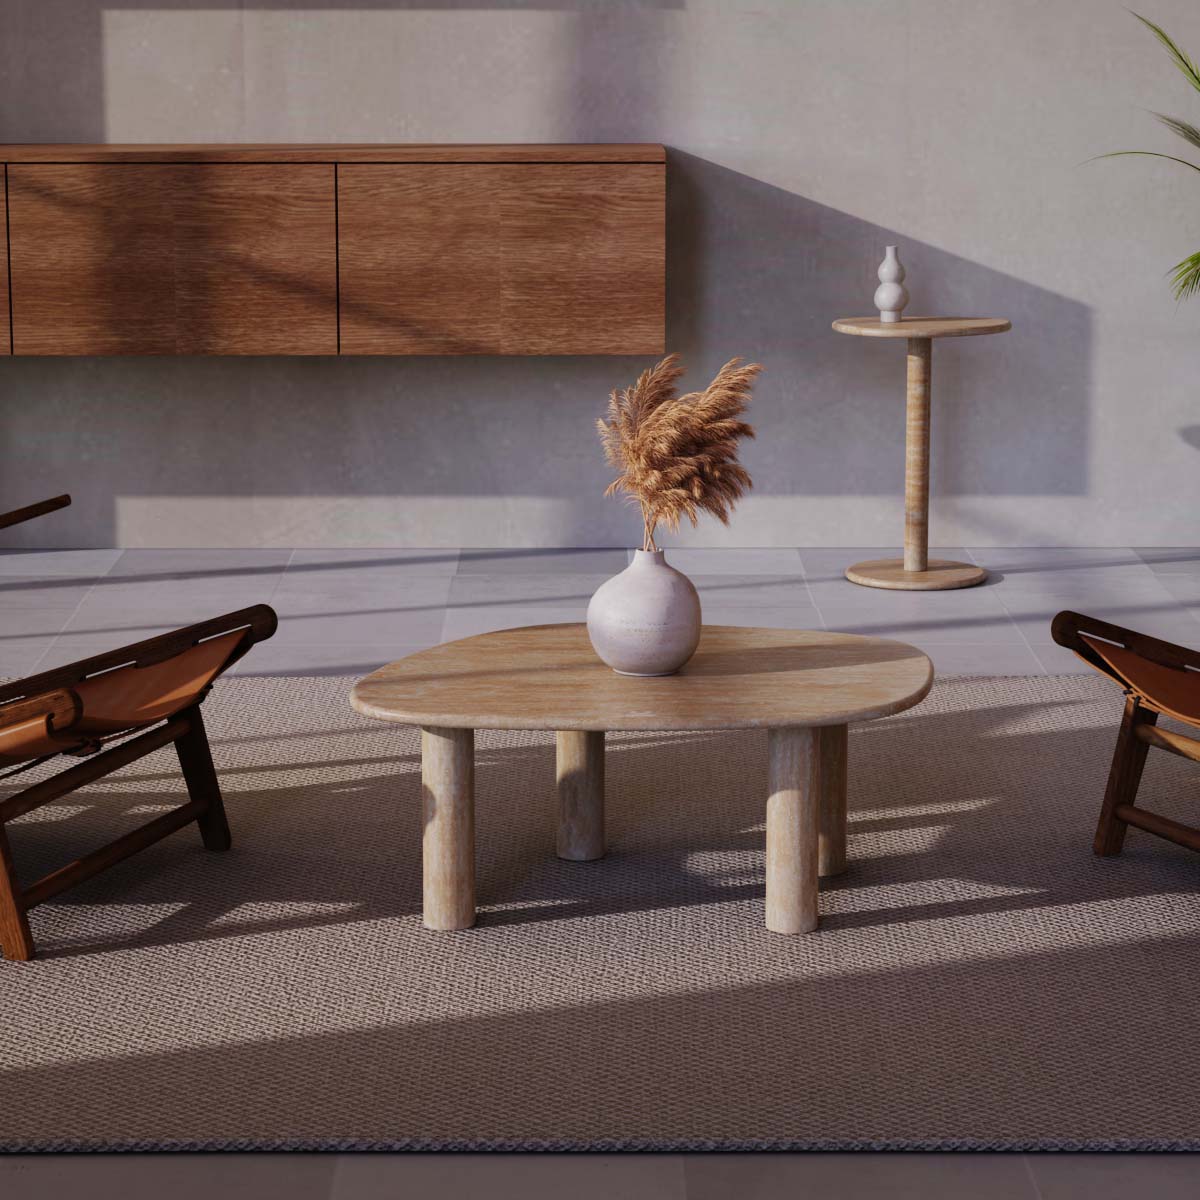 OIXDESIGN ZenPebble Coffee Table Set, Italian Classico Travertine, Macro Scene Graph, Front View